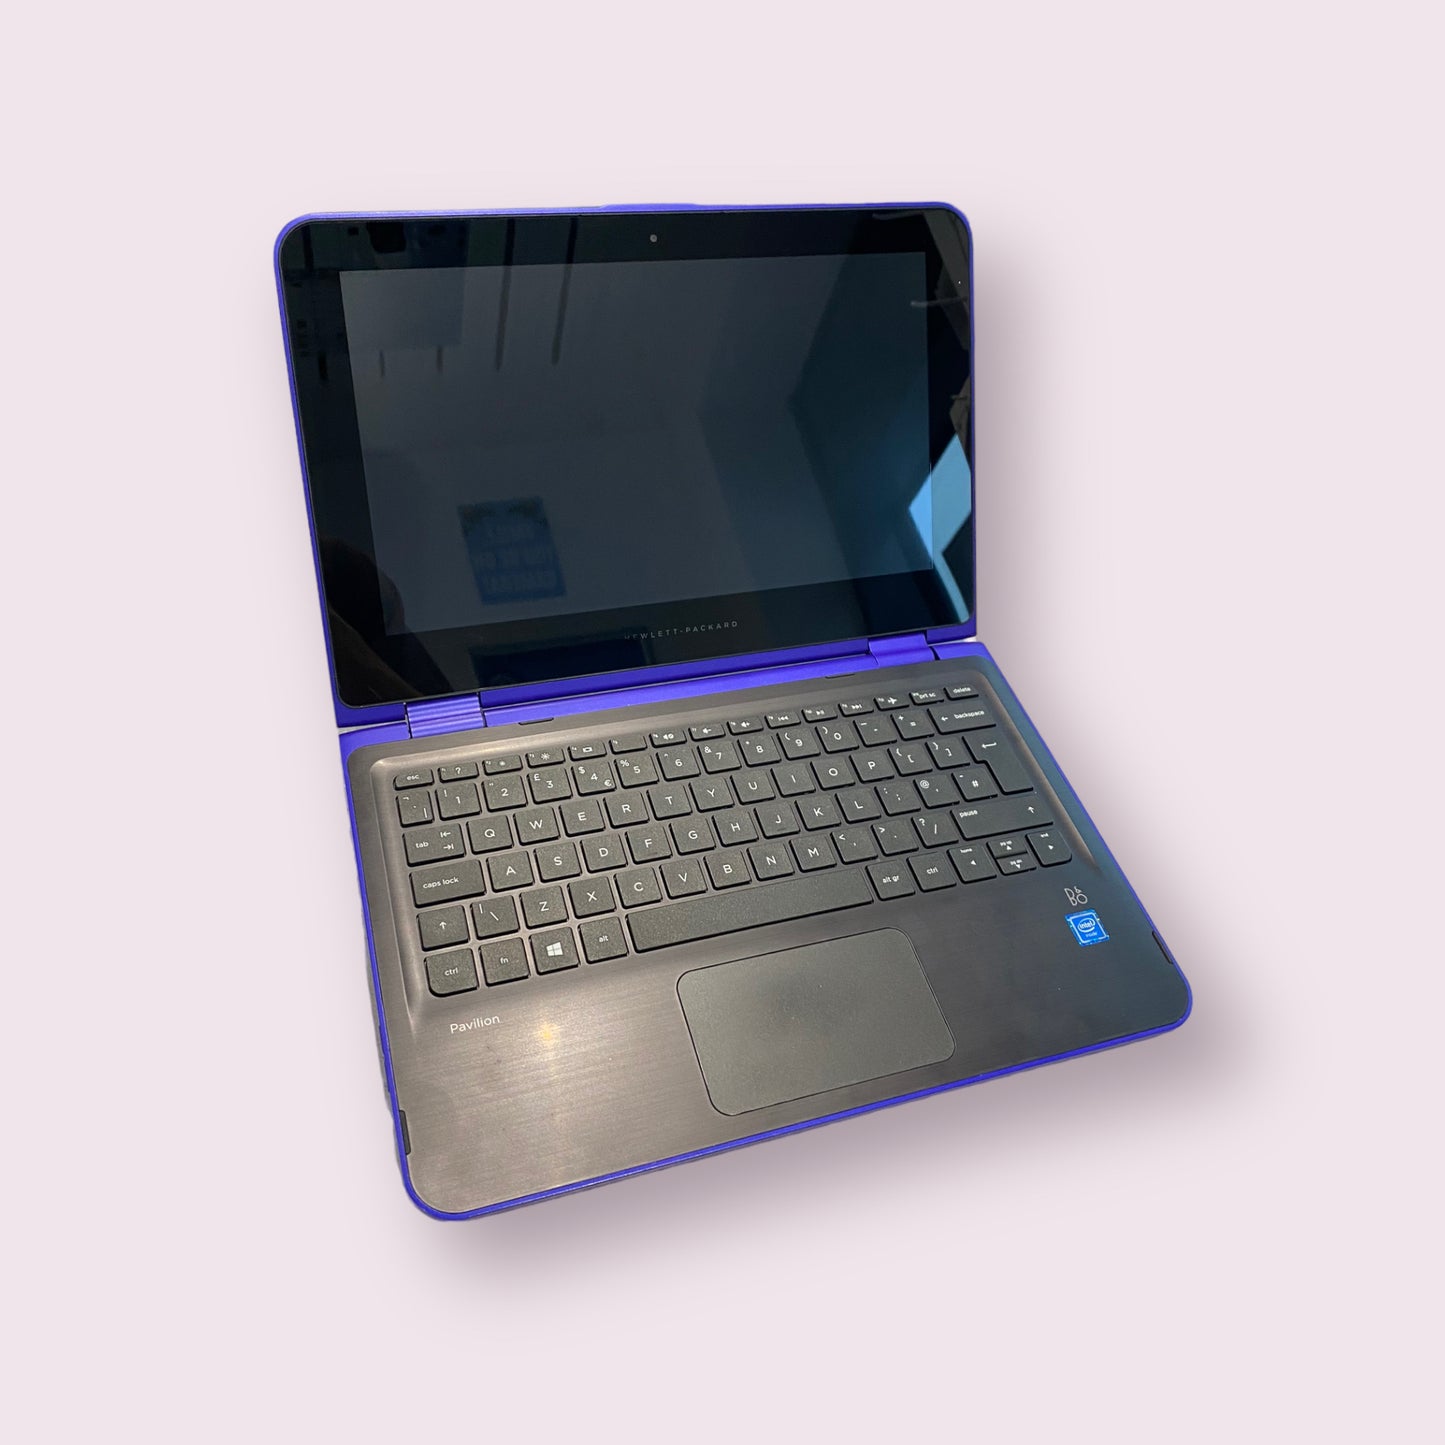 HP Pavilion 11" 11-k154sa Windows 10 Laptop - 4GB RAM - 240GB SSD - Celeron CPU - Purple - Grade B